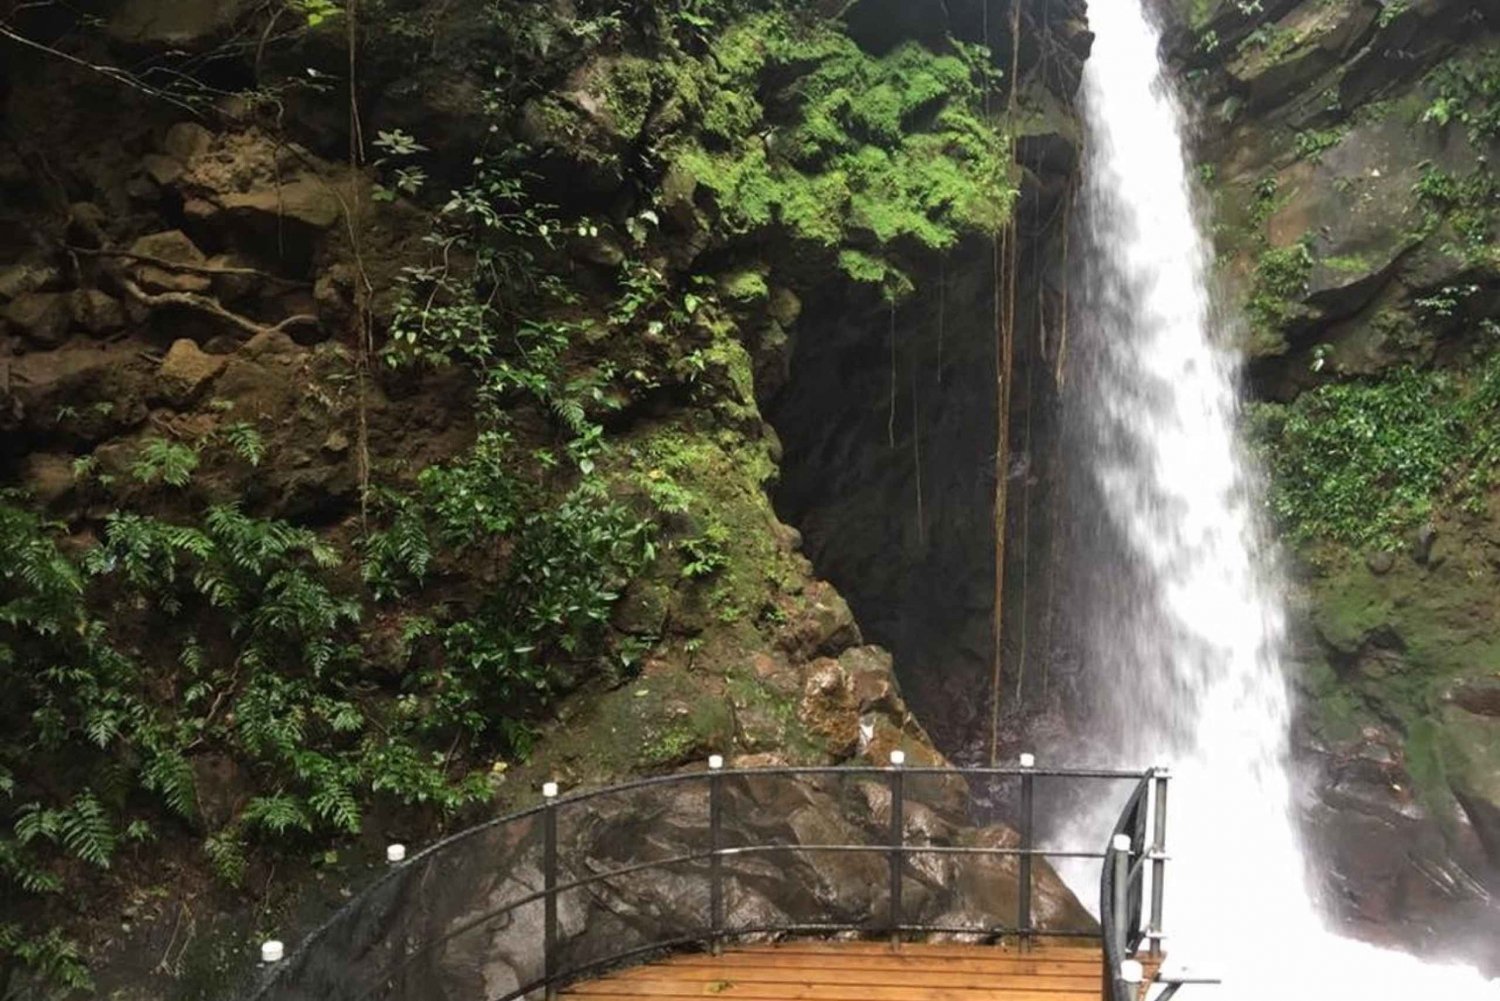 Guanacaste: Rincon de la Vieja National Park Nature Pass